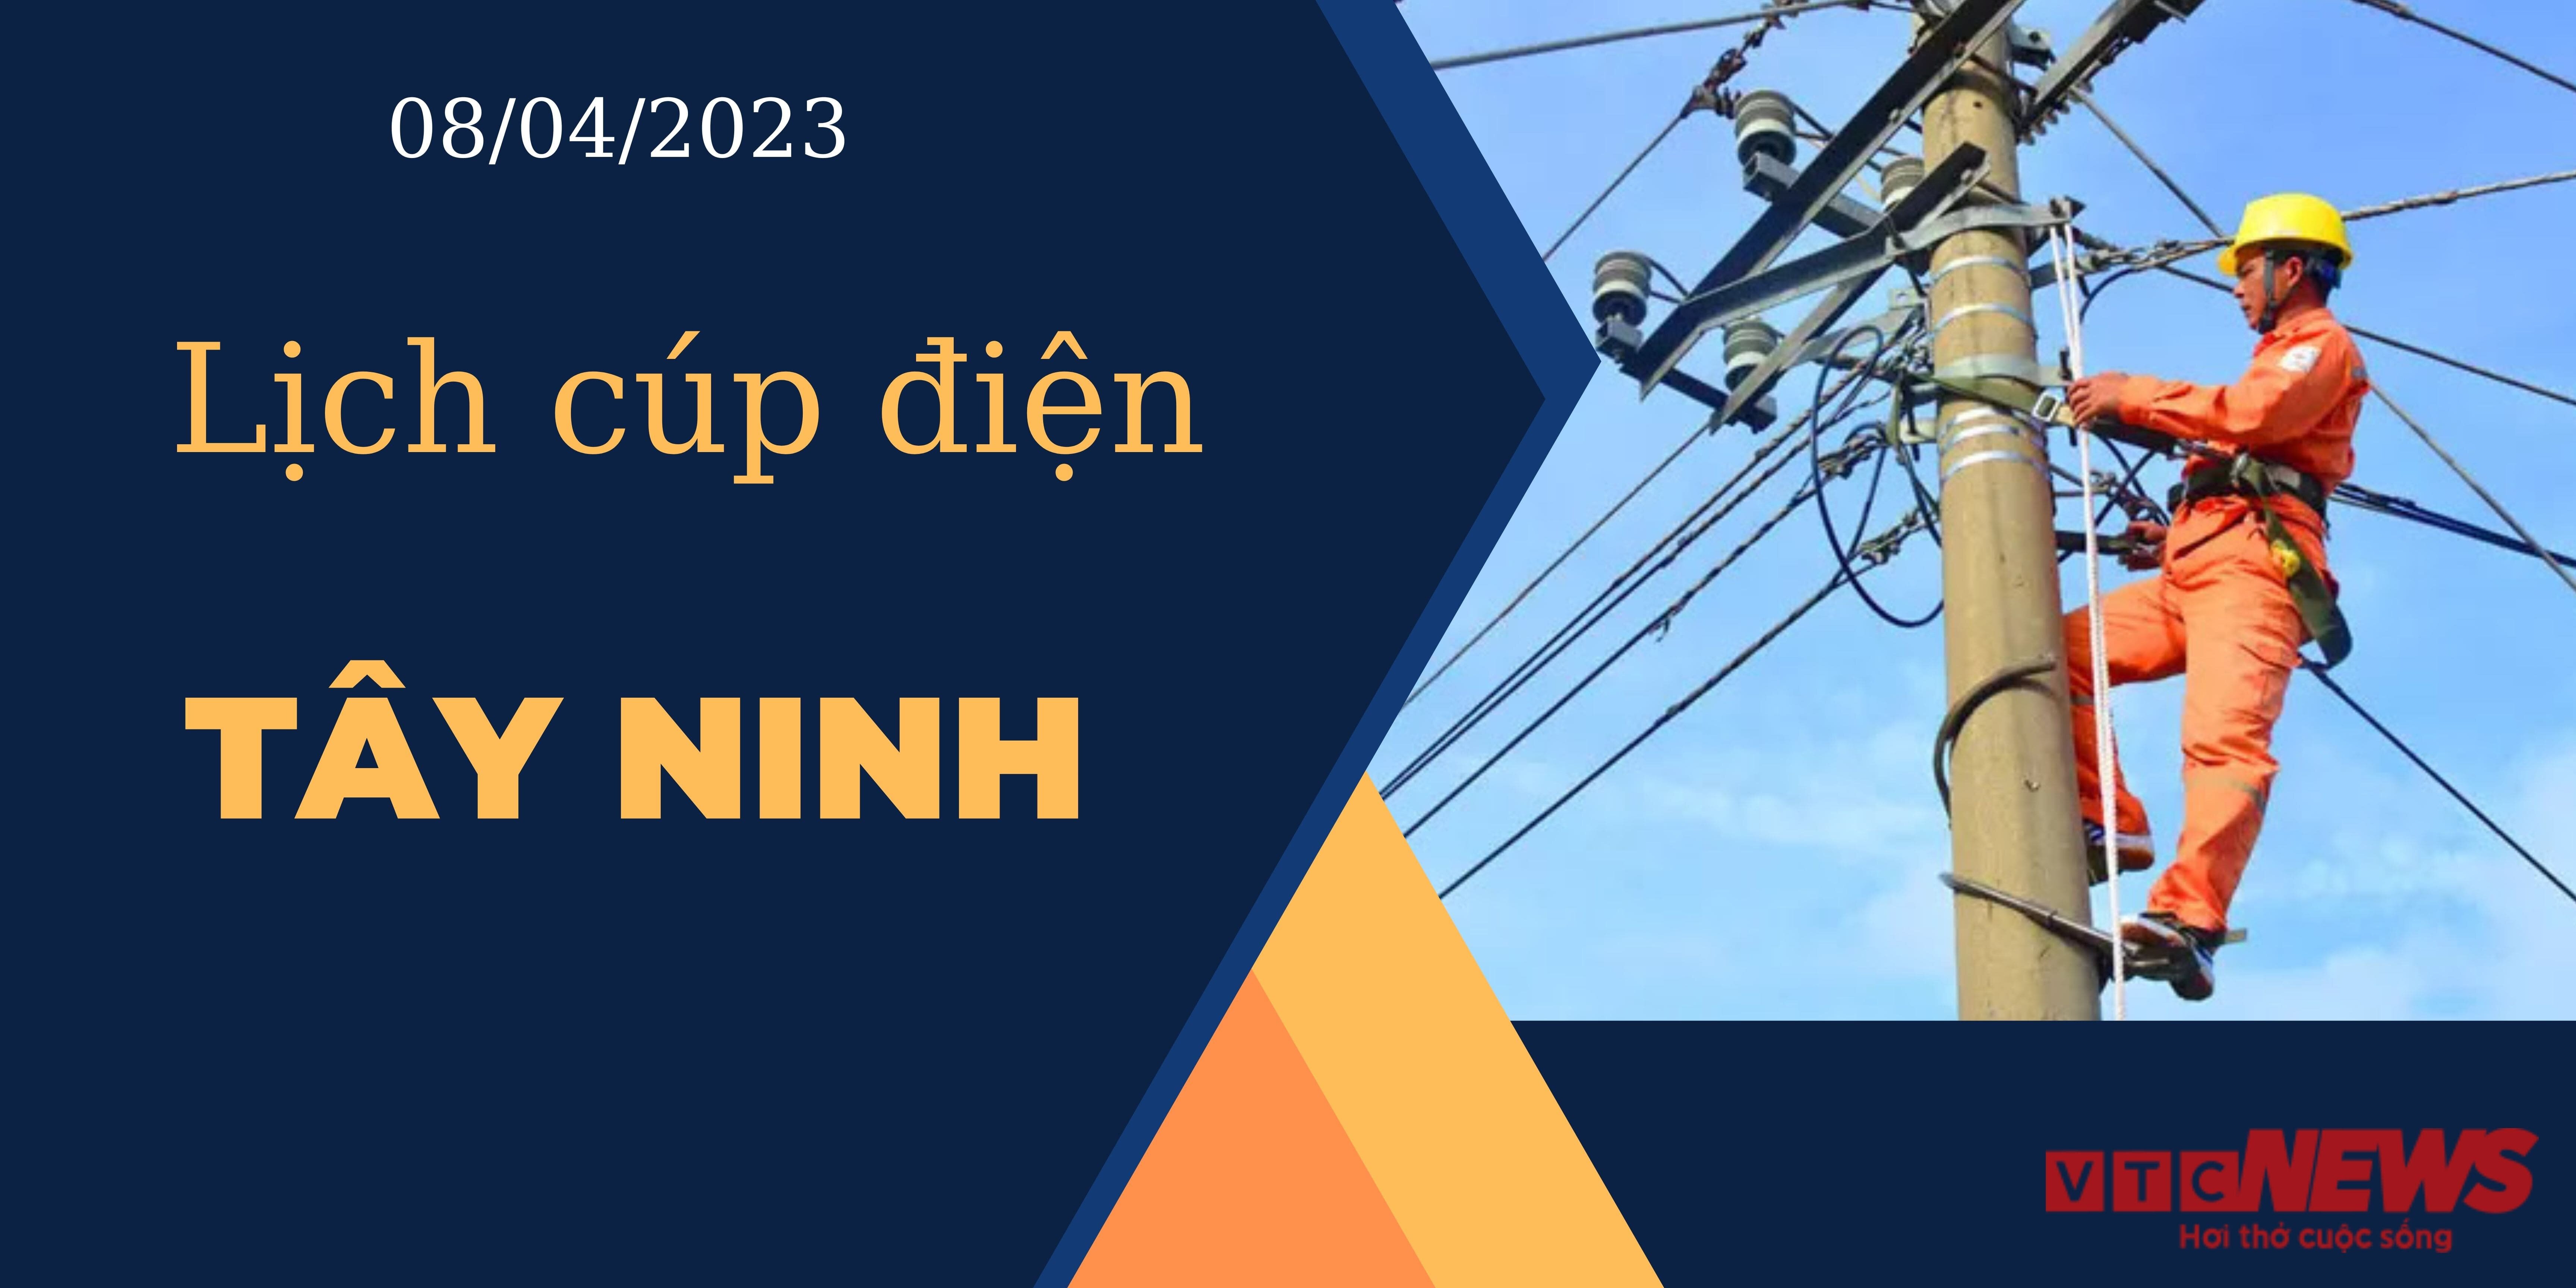 Lịch cúp điện hôm nay tại Tây Ninh ngày 08/04/2023 - 1